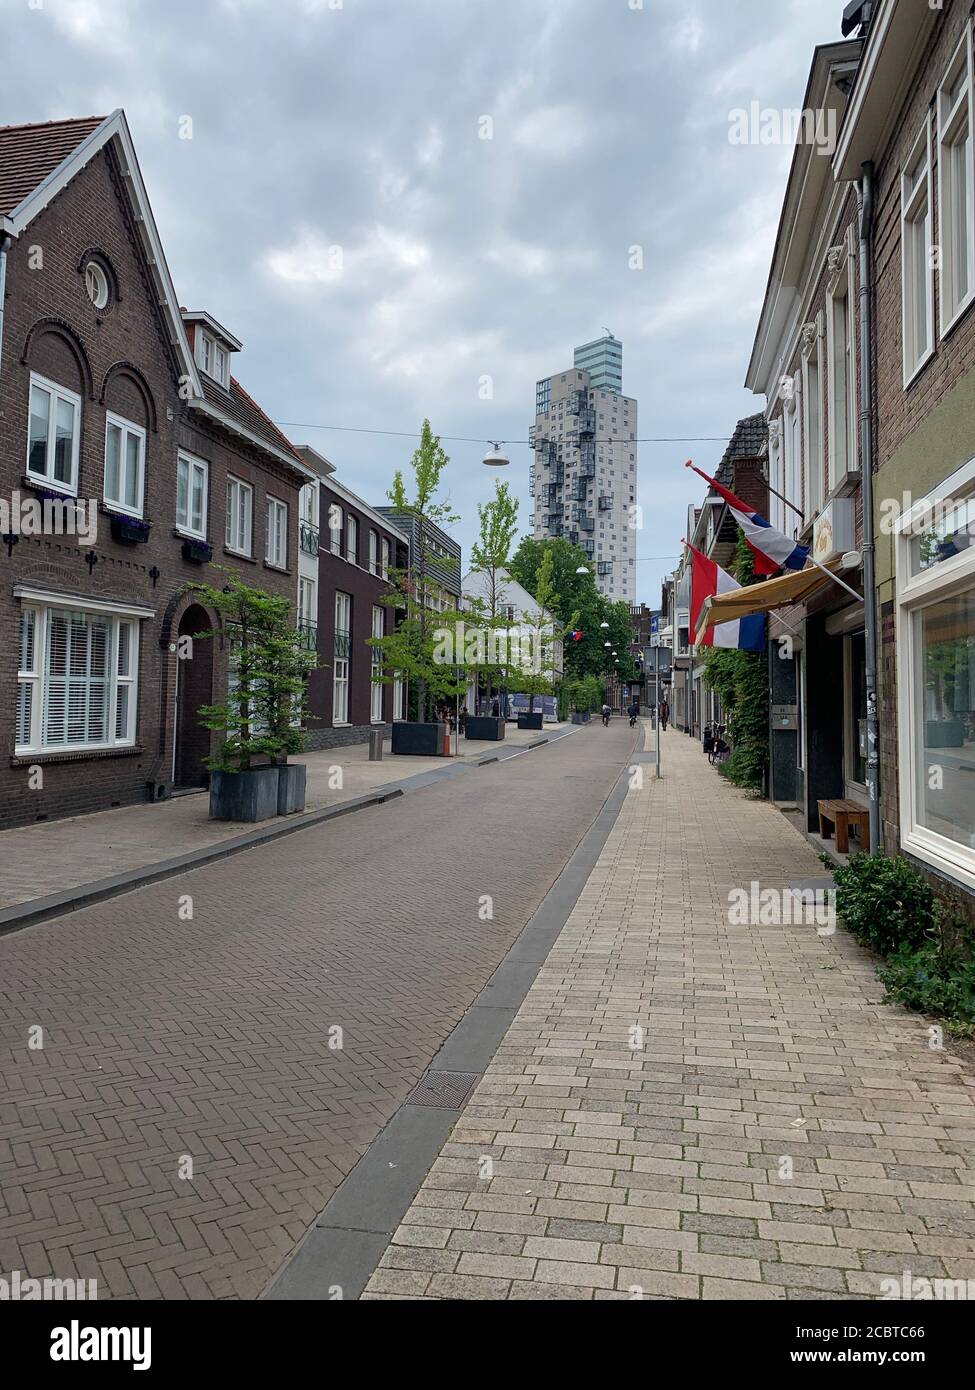 Edificios históricos modernos y antiguos en la calle Noordstraat. Tilburg, Brabante del Norte, países Bajos. Foto de stock